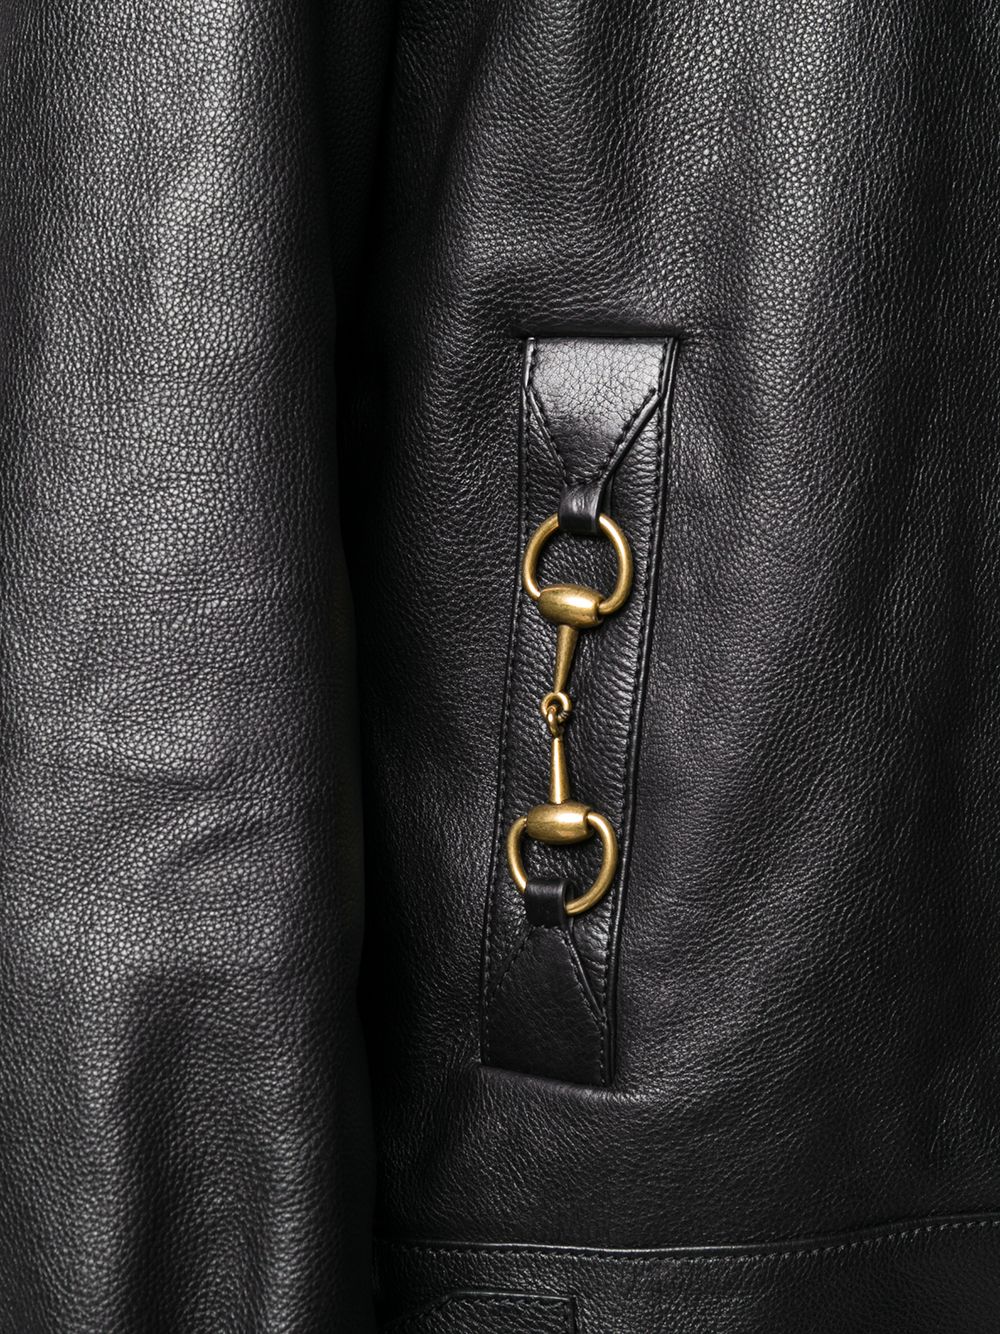 фото Gucci куртка на пуговицах с пряжками horsebit